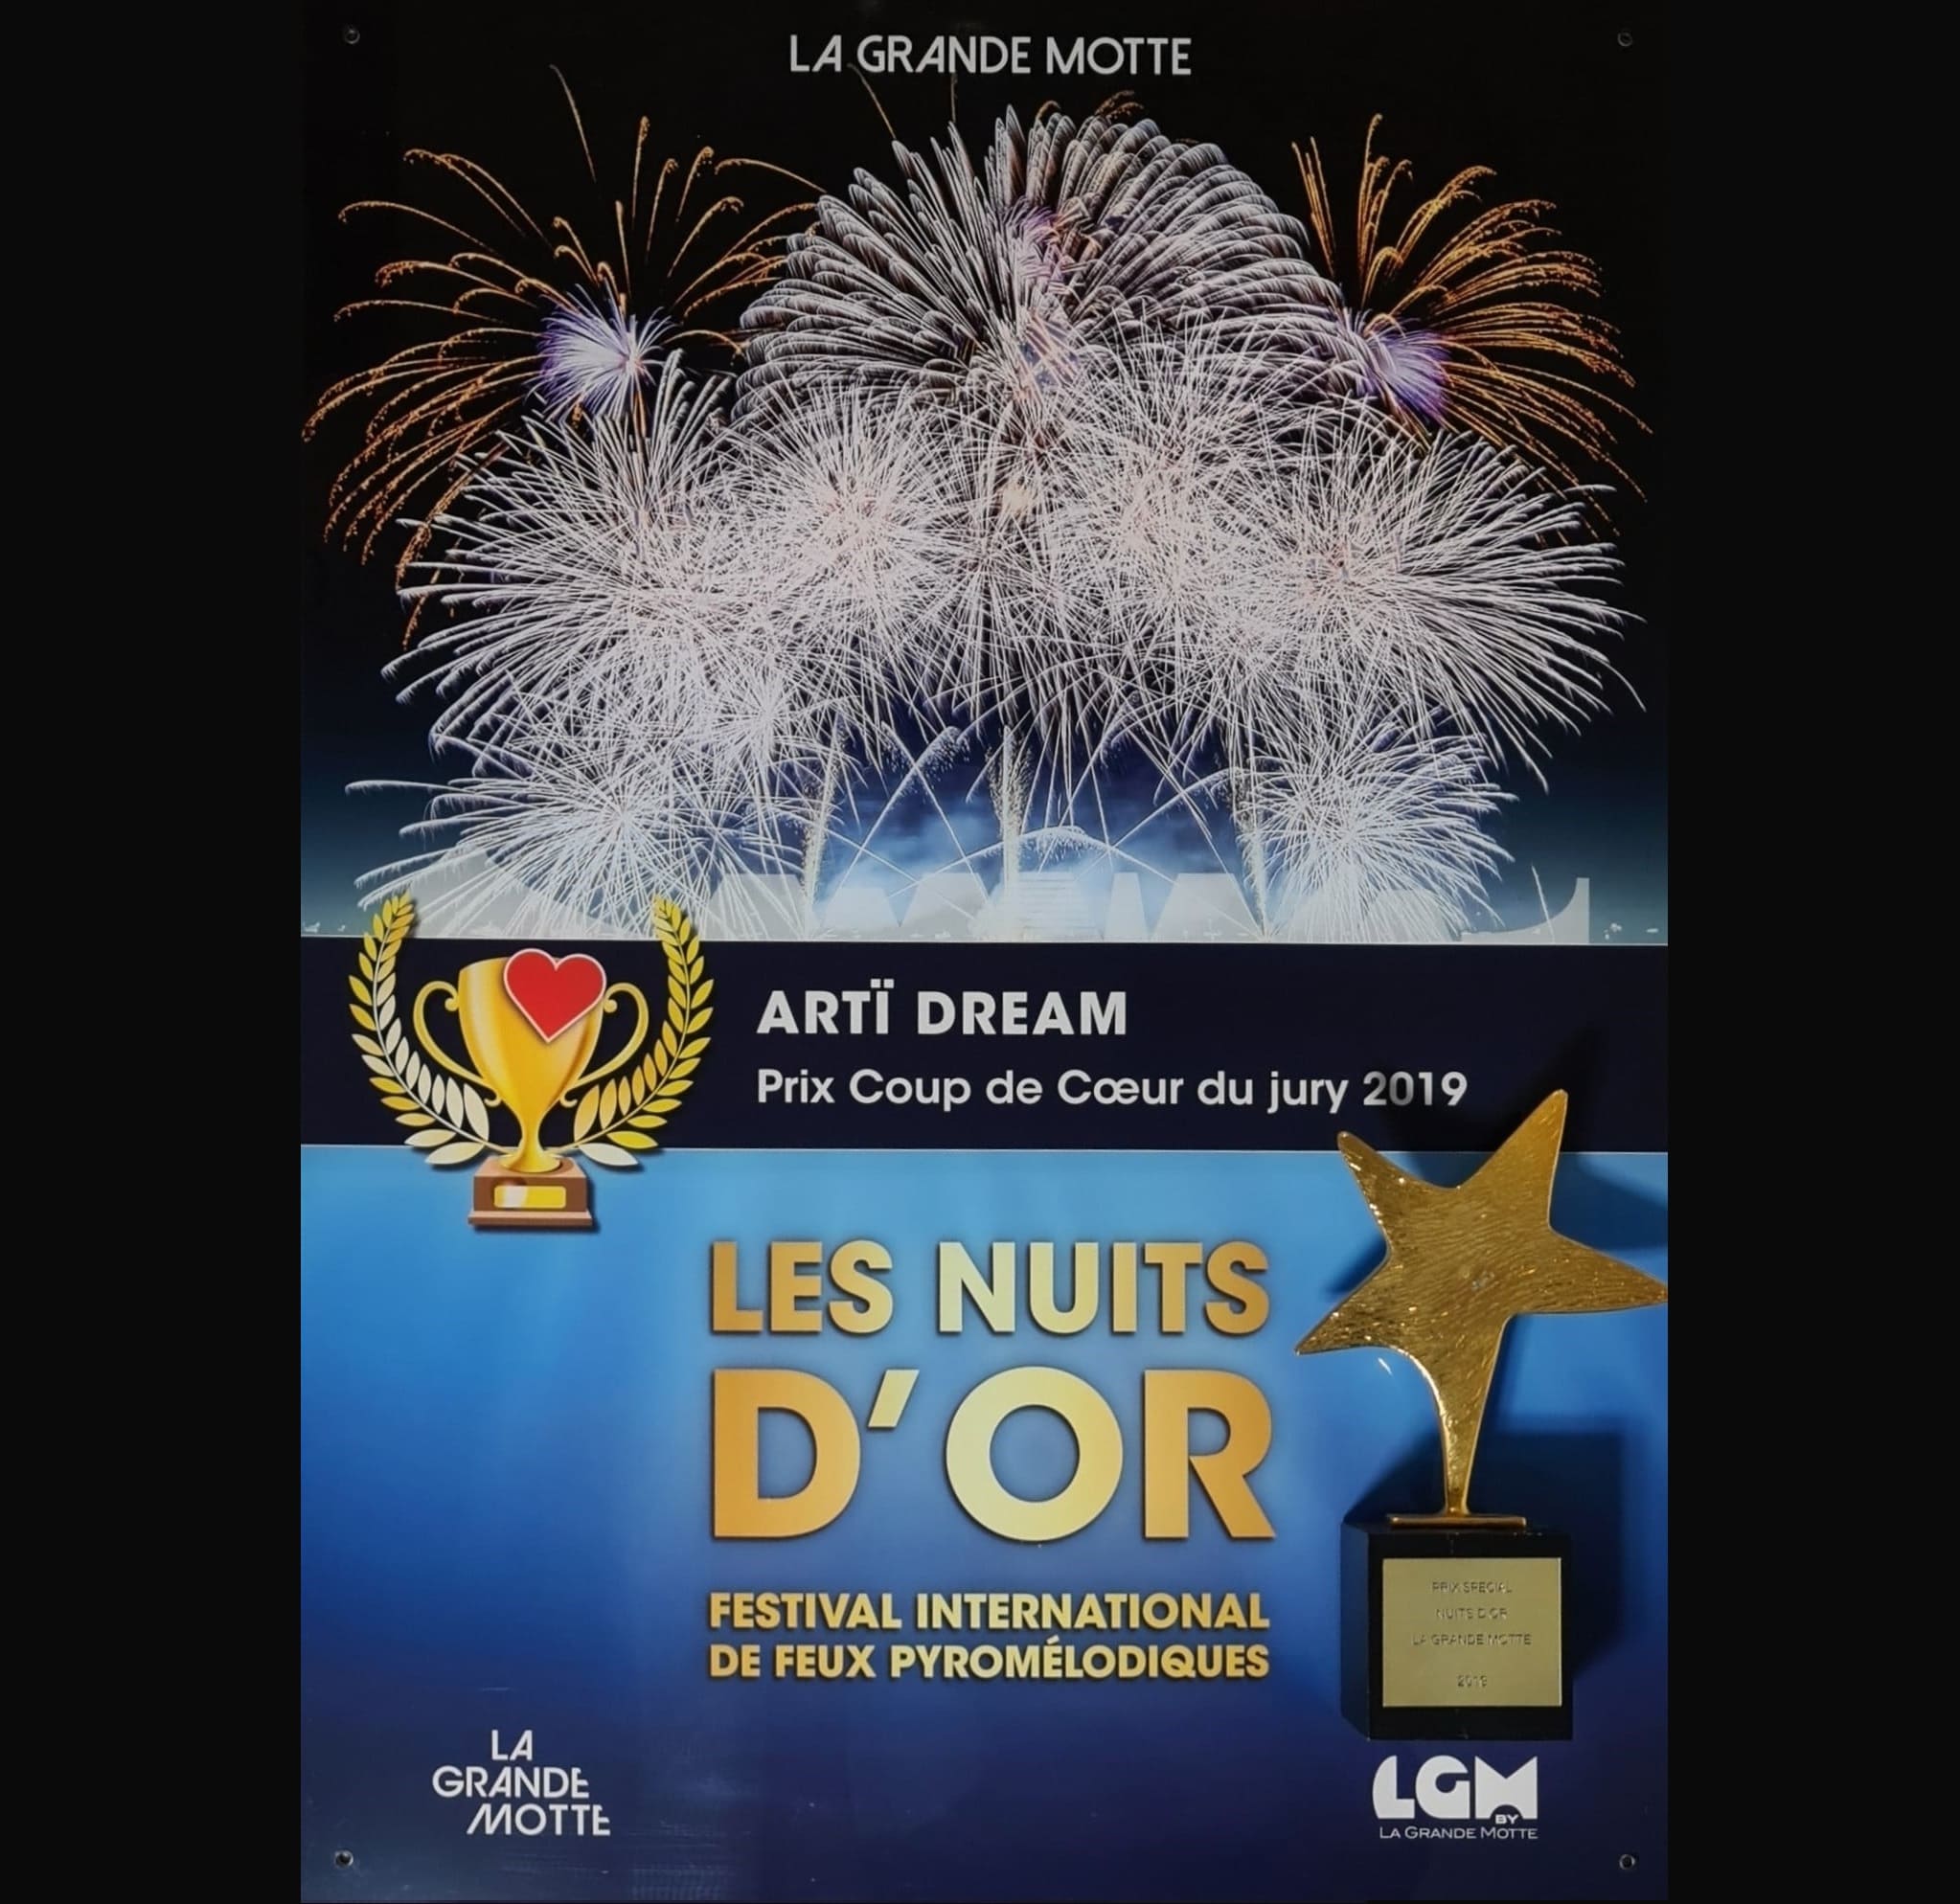 Artï Dream - Prix Coup de Coeur du Jury, La Grande Motte 2019